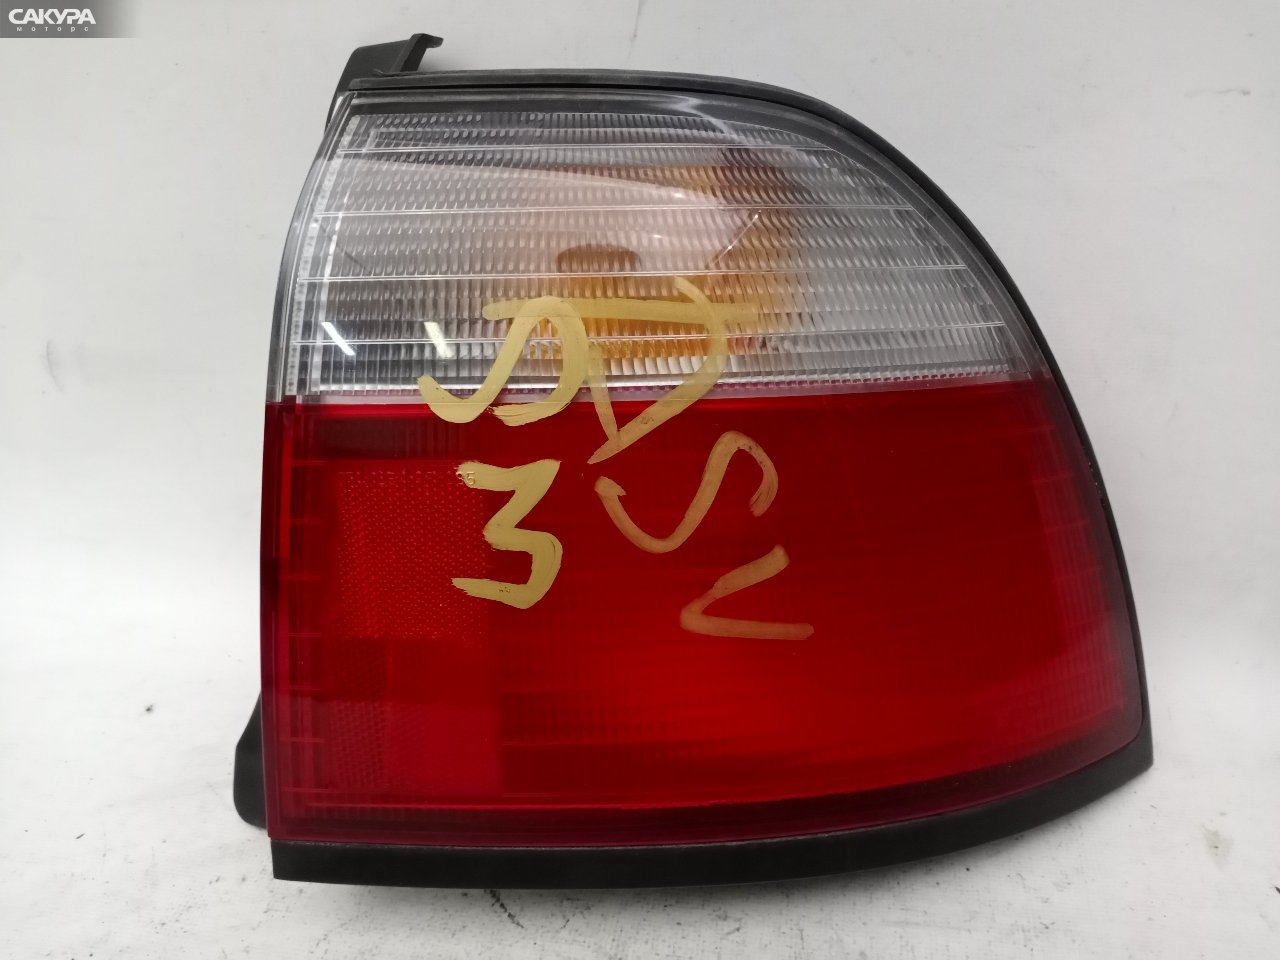 Фонарь стоп-сигнала правый Honda Accord CD3 043-1285: купить в Сакура Красноярск.